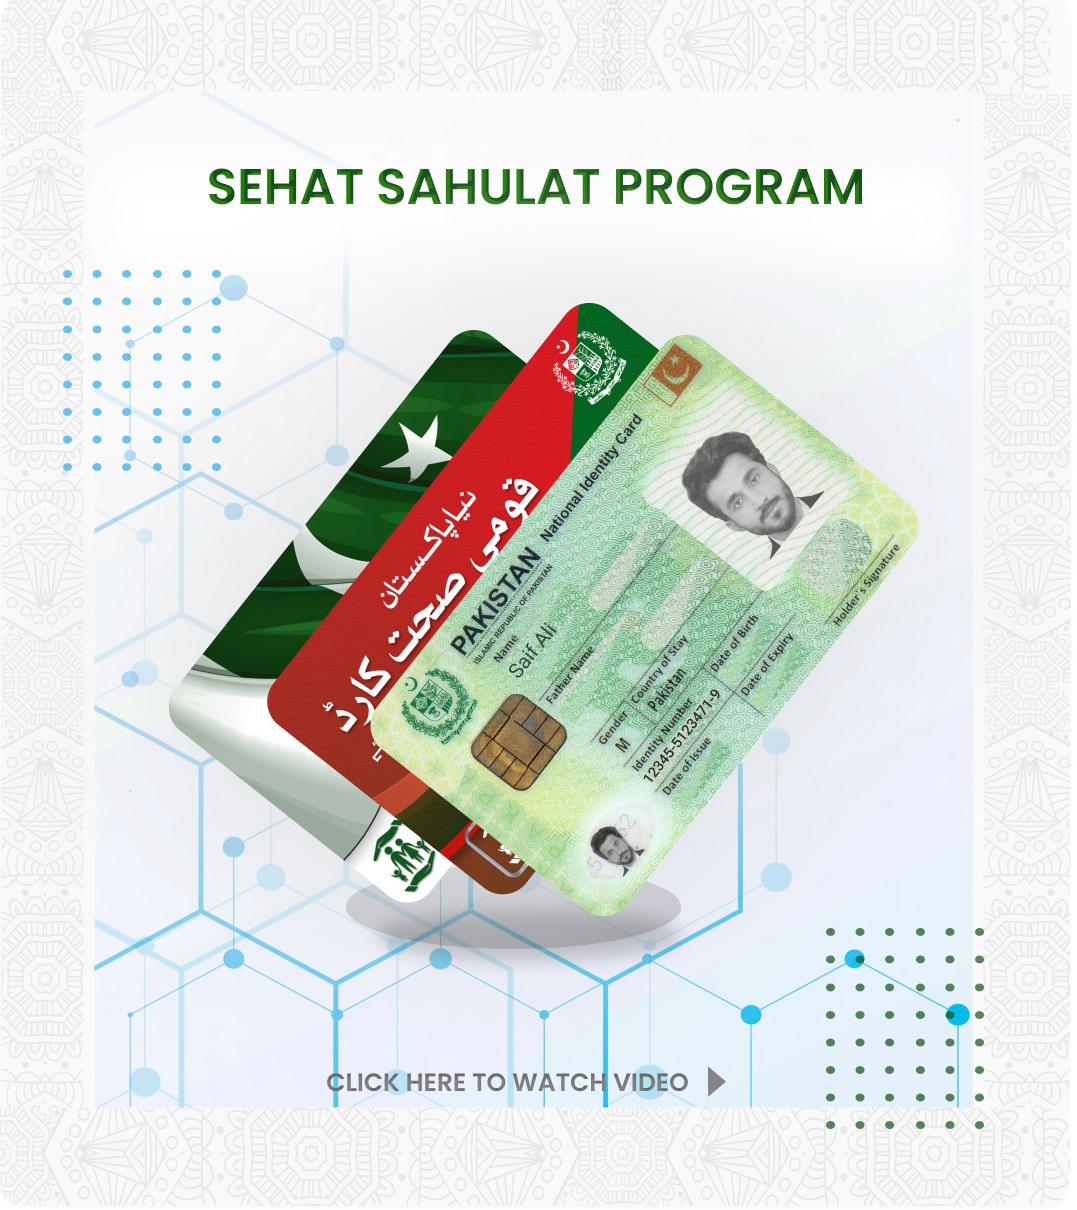 Sehat Sahulat Program Card Image